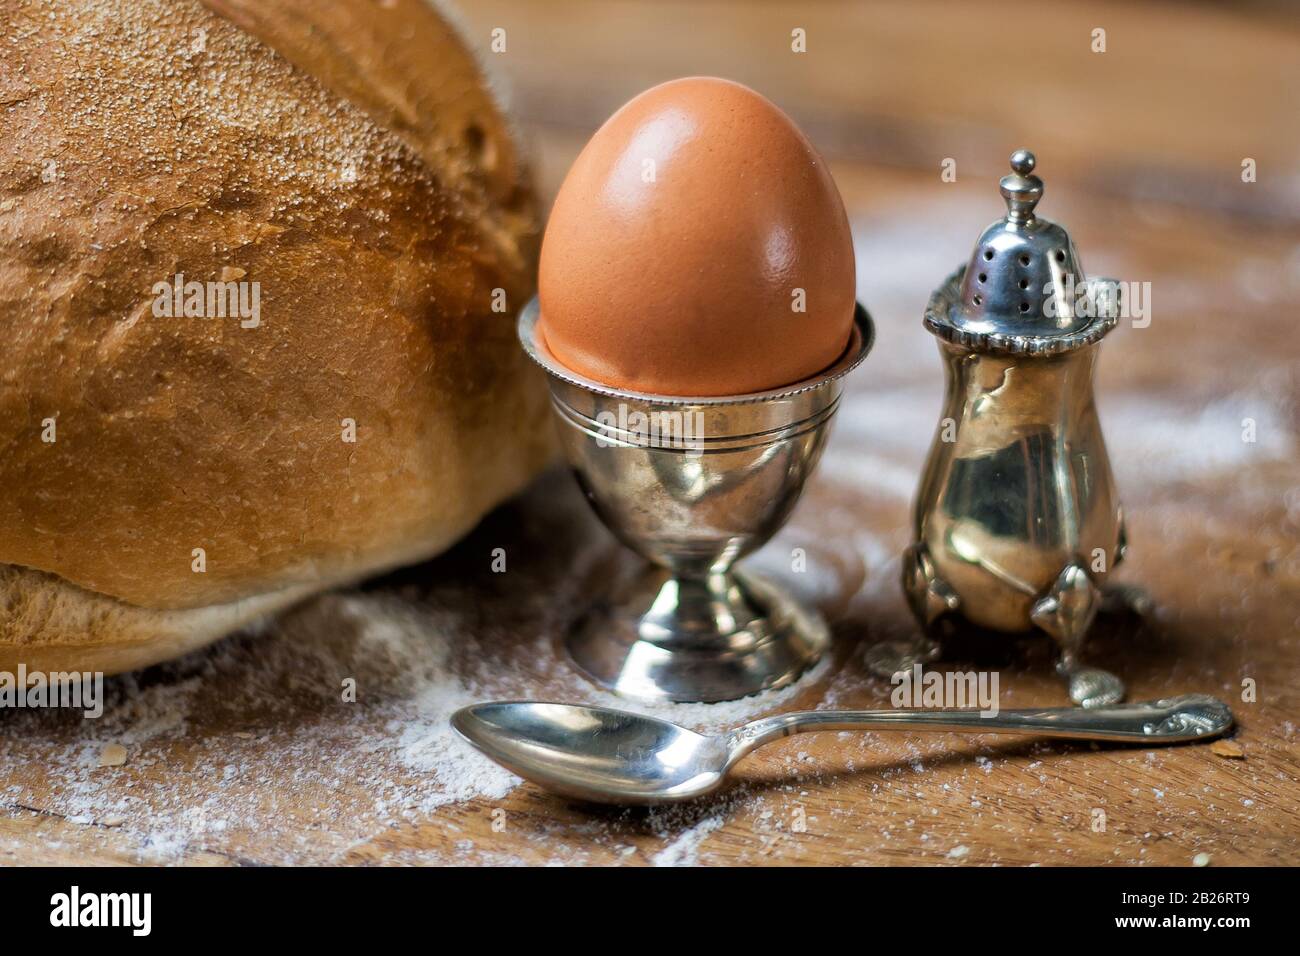 Pane sul tavolo in legno con farina, uovo in argento, agitatrice di sale e cucchiaio. Foto Stock